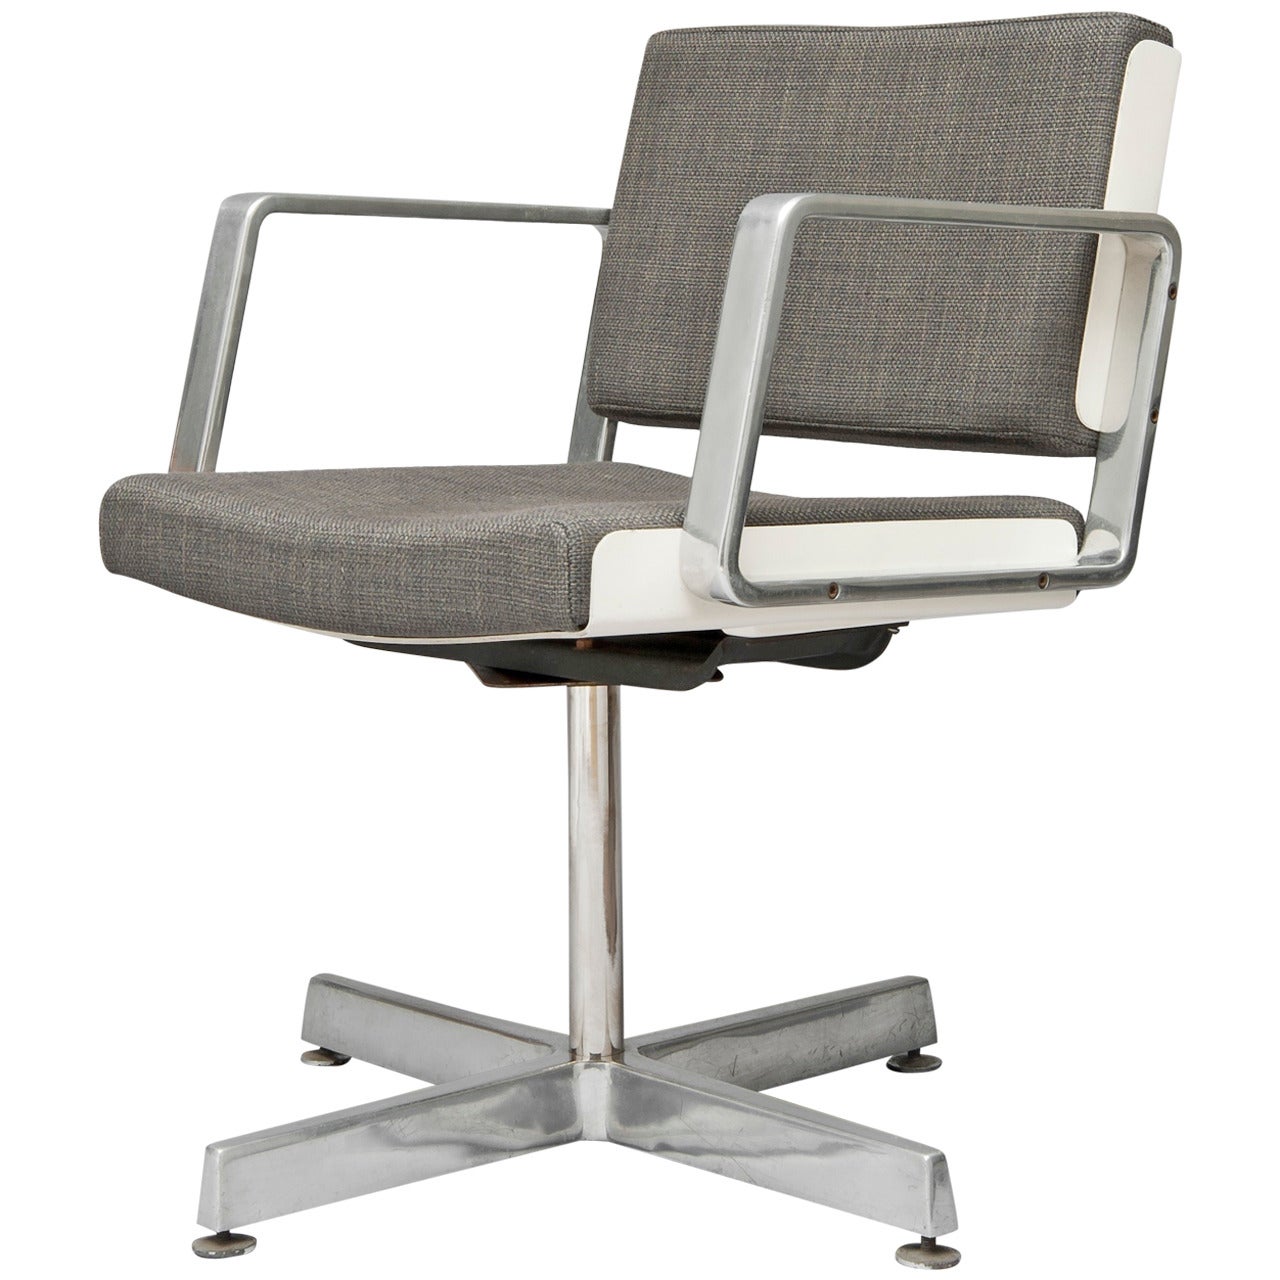 Desk chair AR 1603 by Alain Richard - TFM/ARC edition - 1974 For Sale